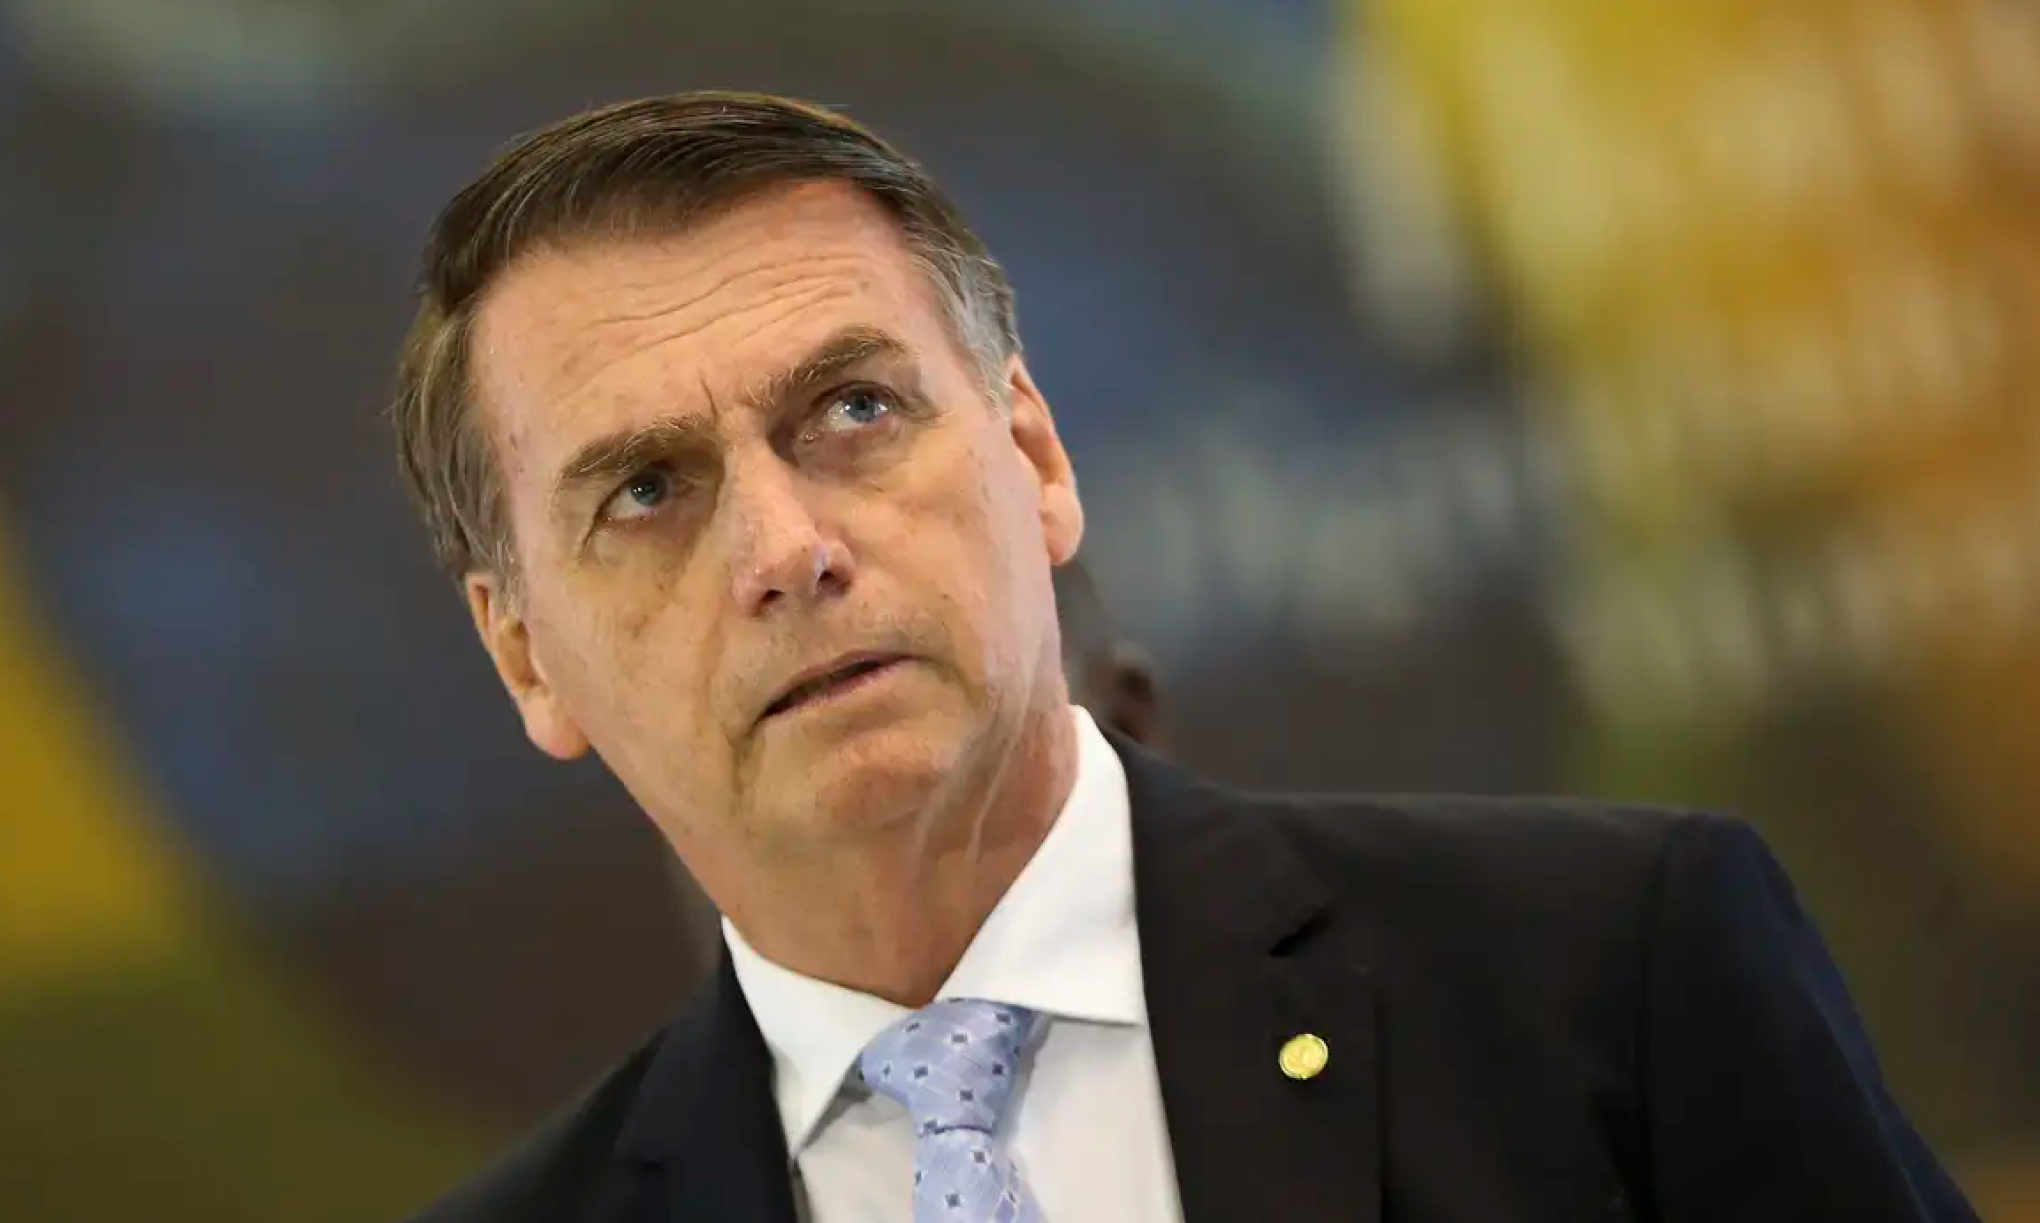 Polícia Federal vai investigar se Bolsonaro se antecipou a pedido de prisão ao ficar em embaixada